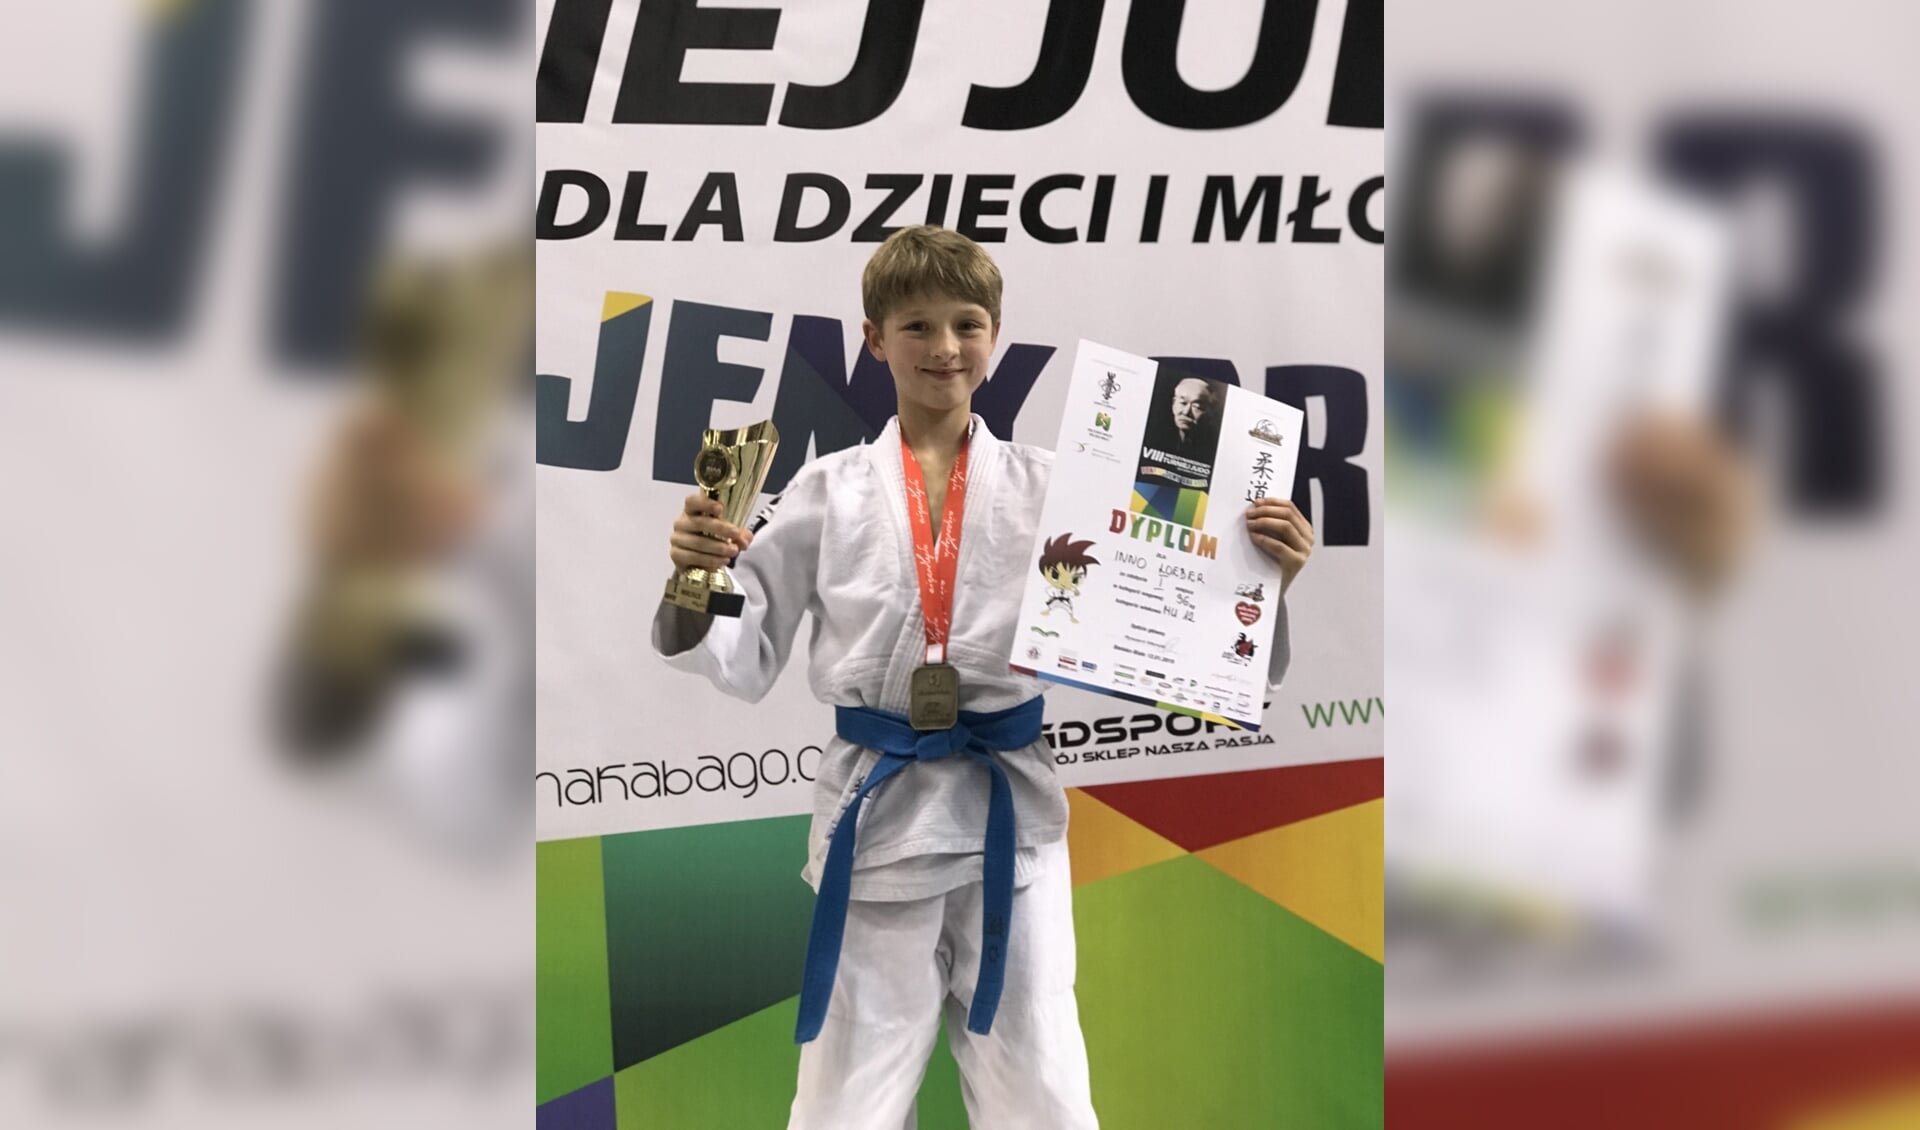 Judoka Inno Loeber wint goud in Bielsko-Biala 